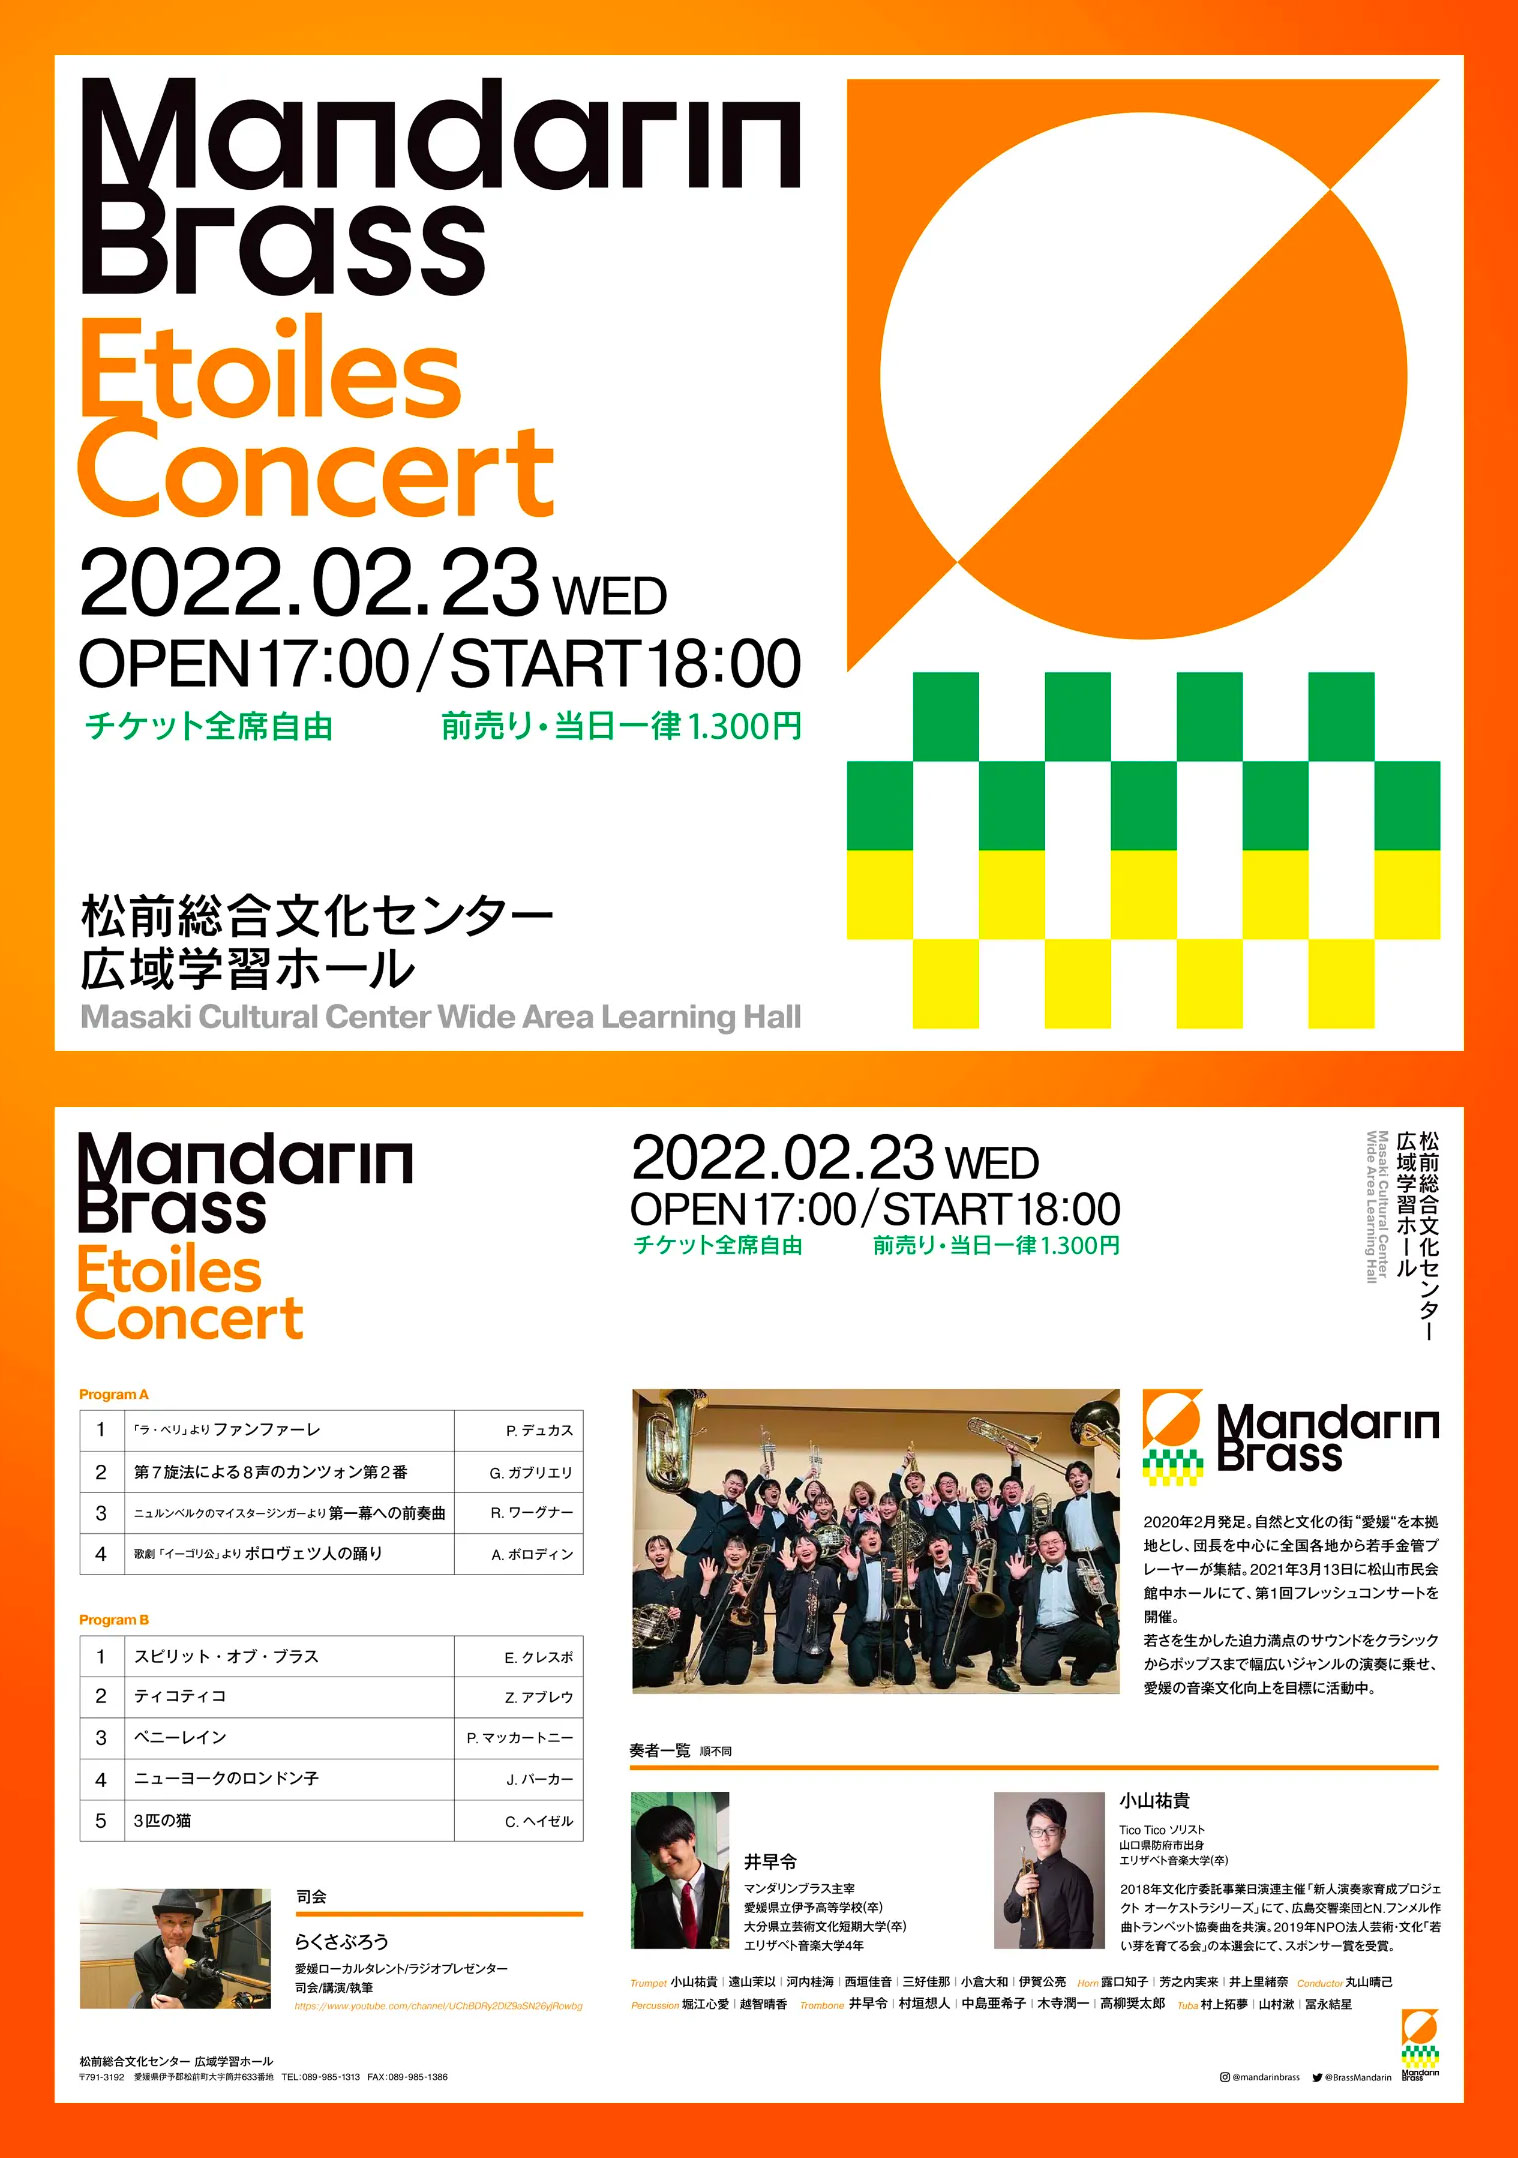 Mandarin Brass Etoiles Concert